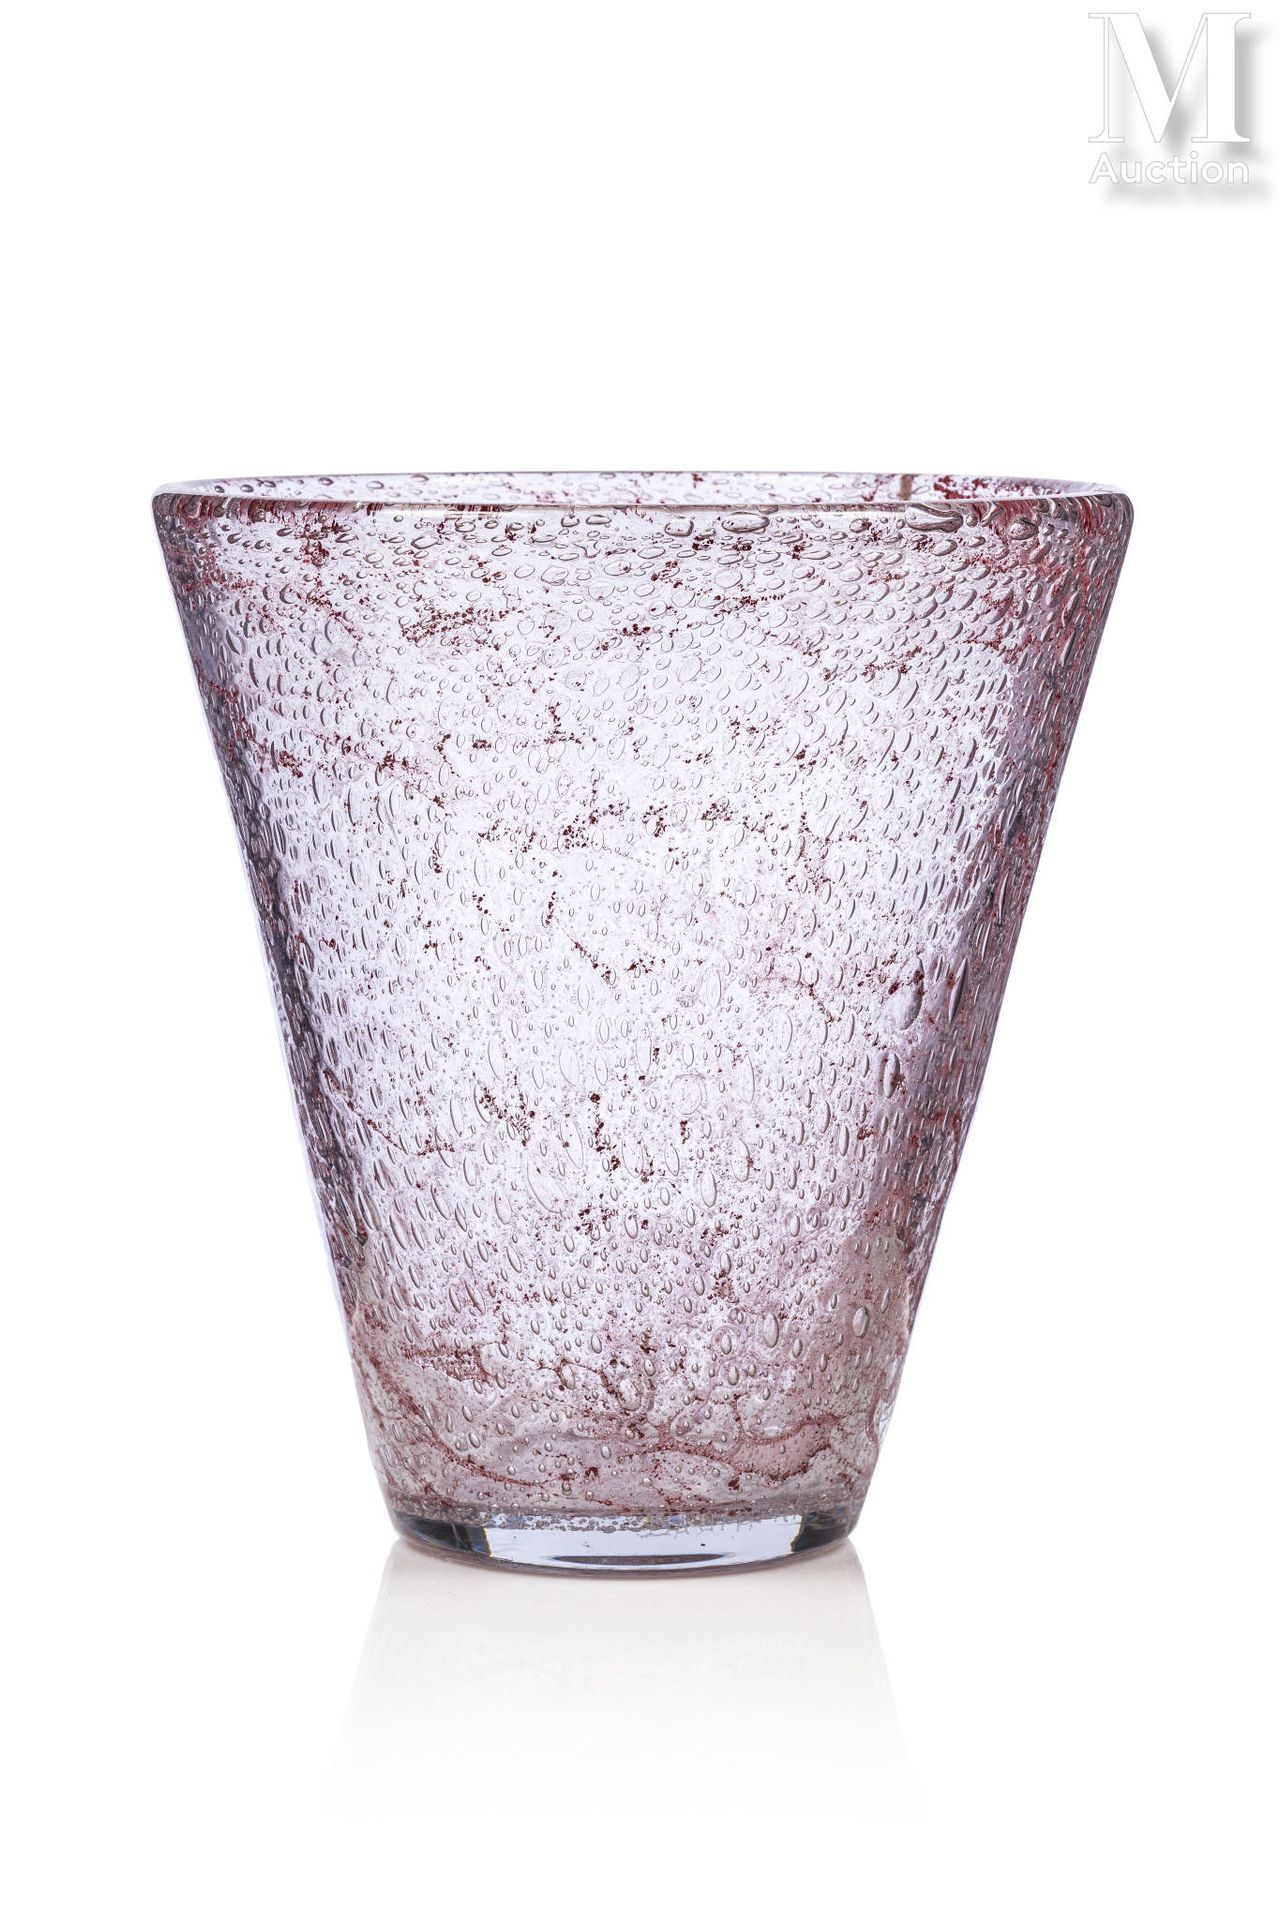 DAUM - Nancy FRANCE Vase en épais verre bullé à décor de poudres rouge-rosées.

&hellip;